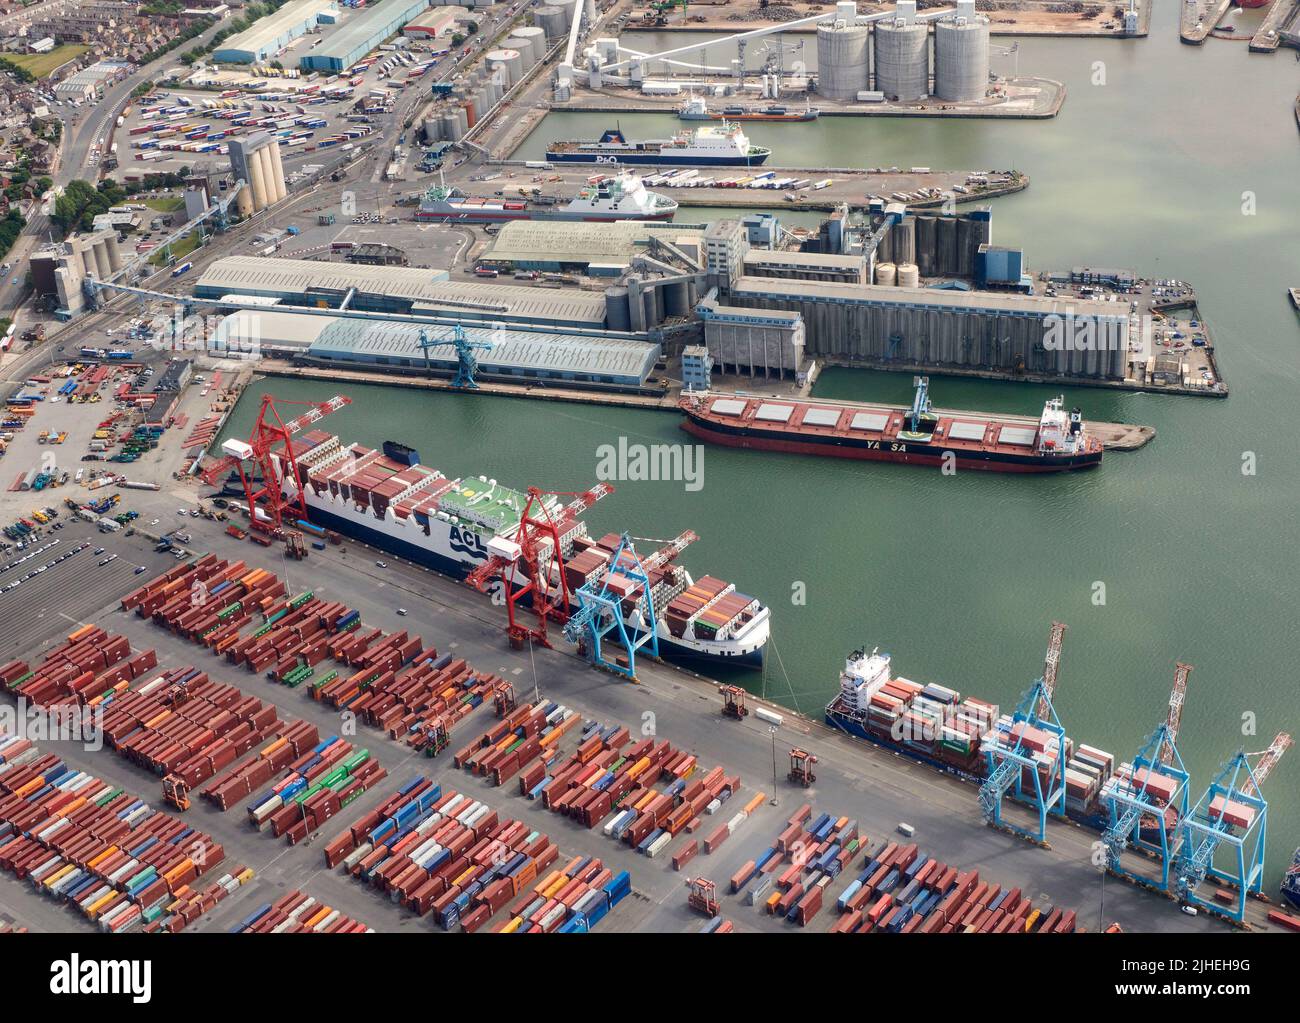 Luftaufnahme des Peel Port an den Seaforth Docks, Liverpool, Mersey Side, Nordwestengland, Großbritannien Stockfoto